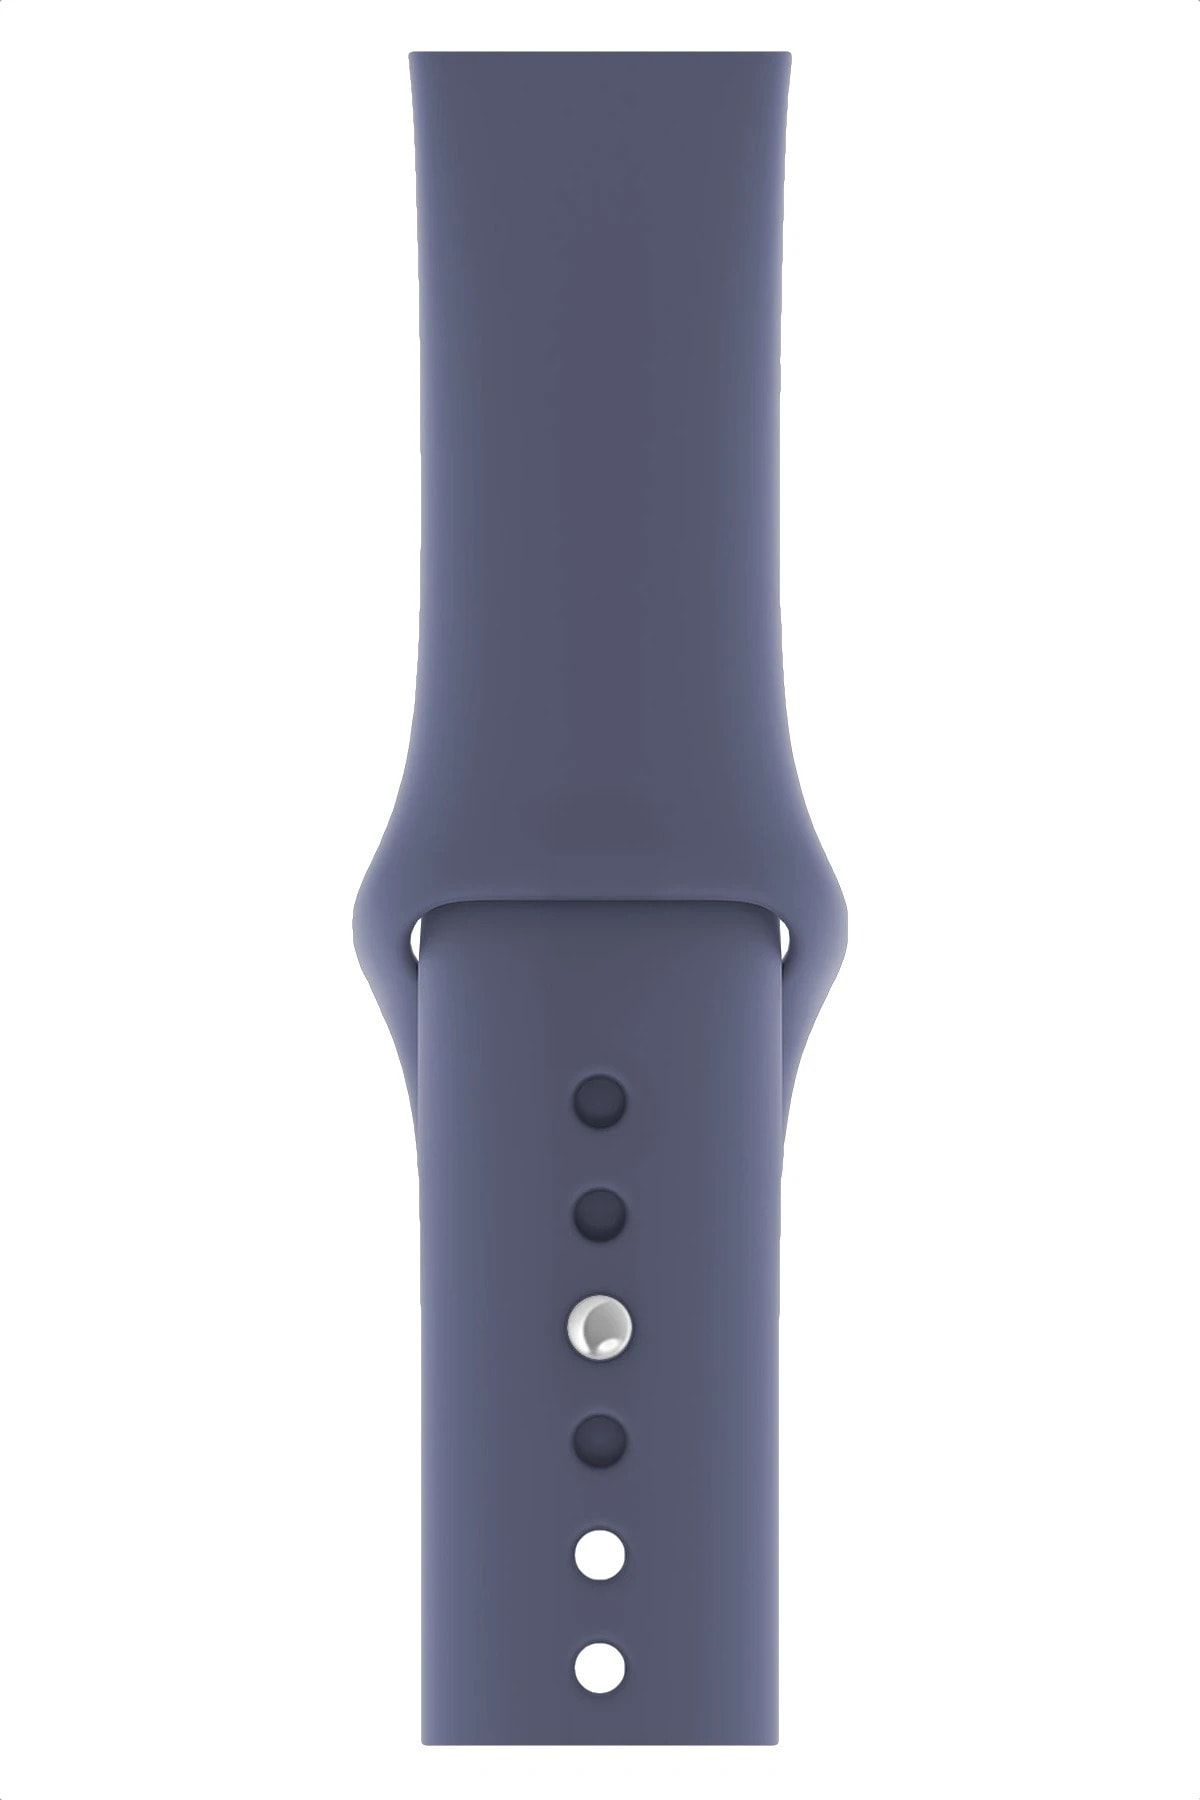 Fibaks Apple Watch 42mm A+ Yüksek Kalite Spor Klasik Silikon Kordon Kayış Bileklik